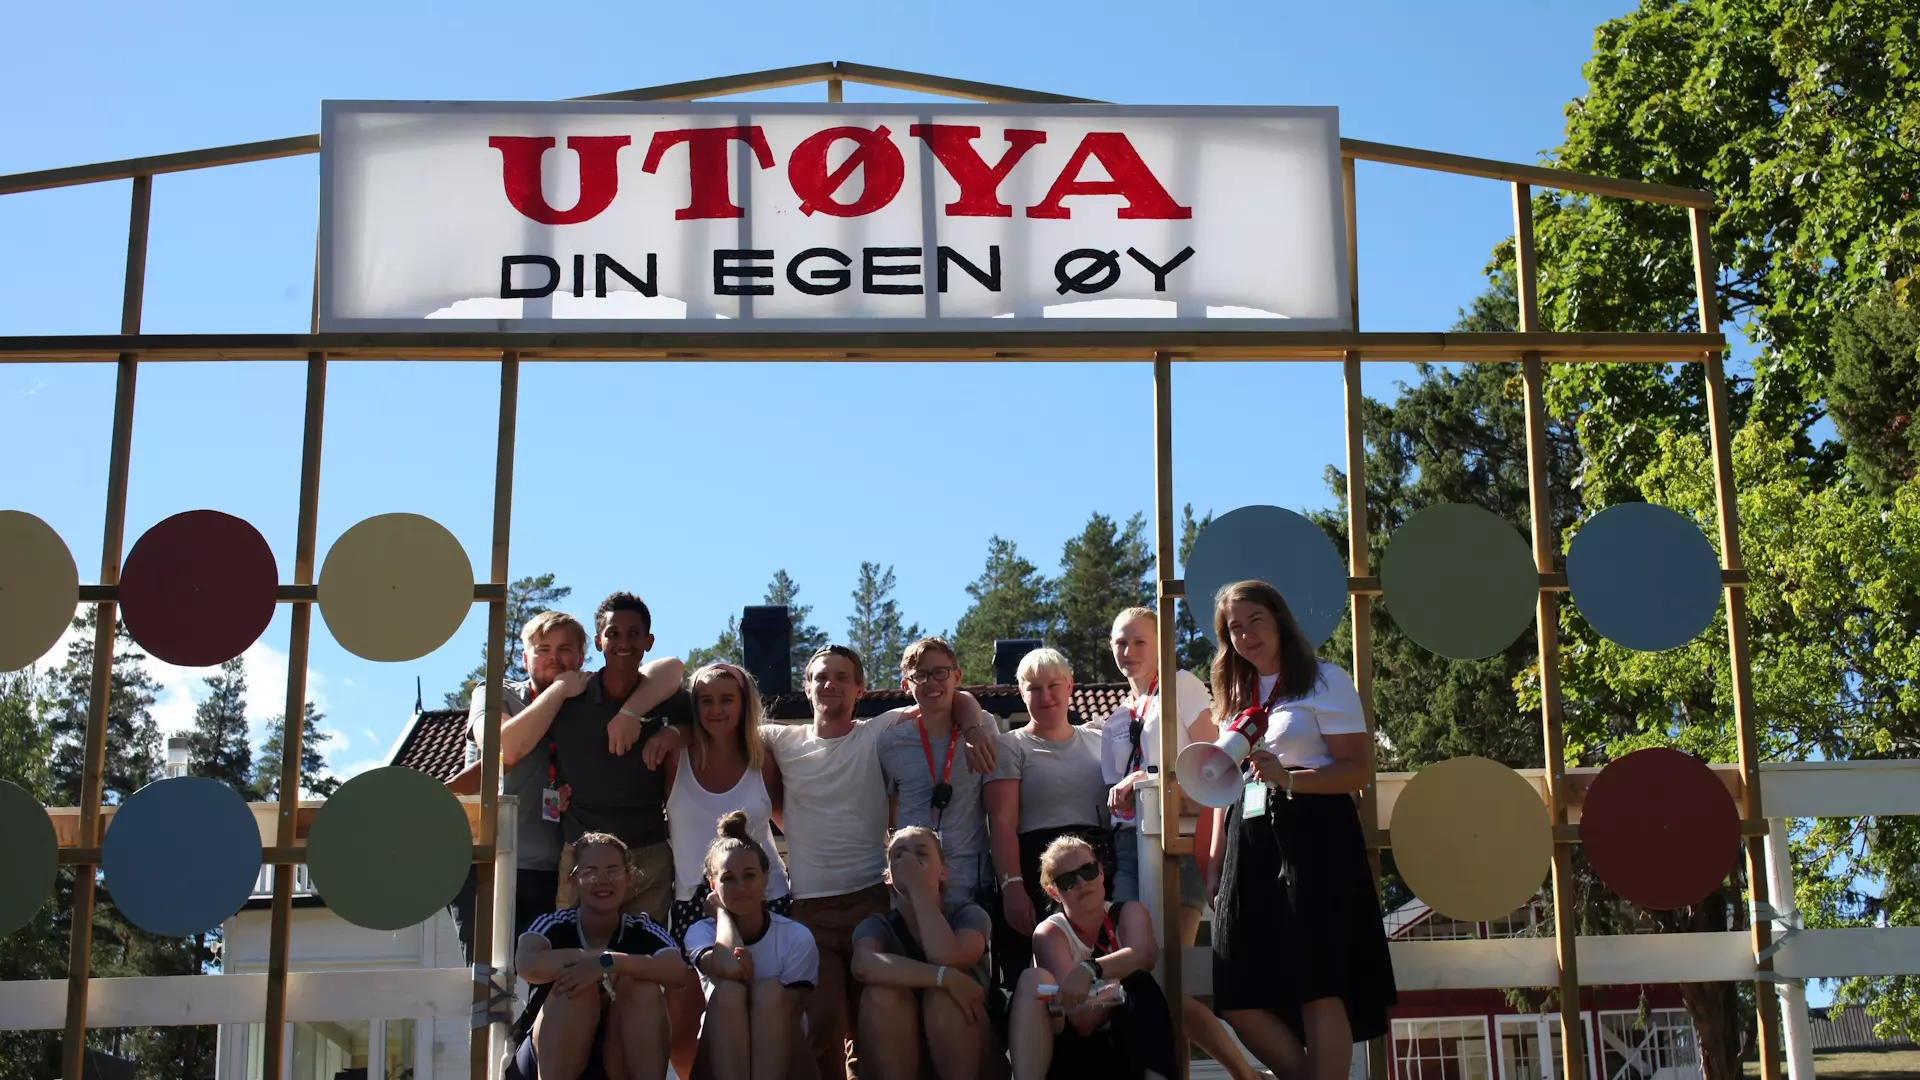 En gjeng ungdommer poserer ved en port som har et skilt på toppen der det står "Utøya - din egen øy". Det er fint vær og sommer. 